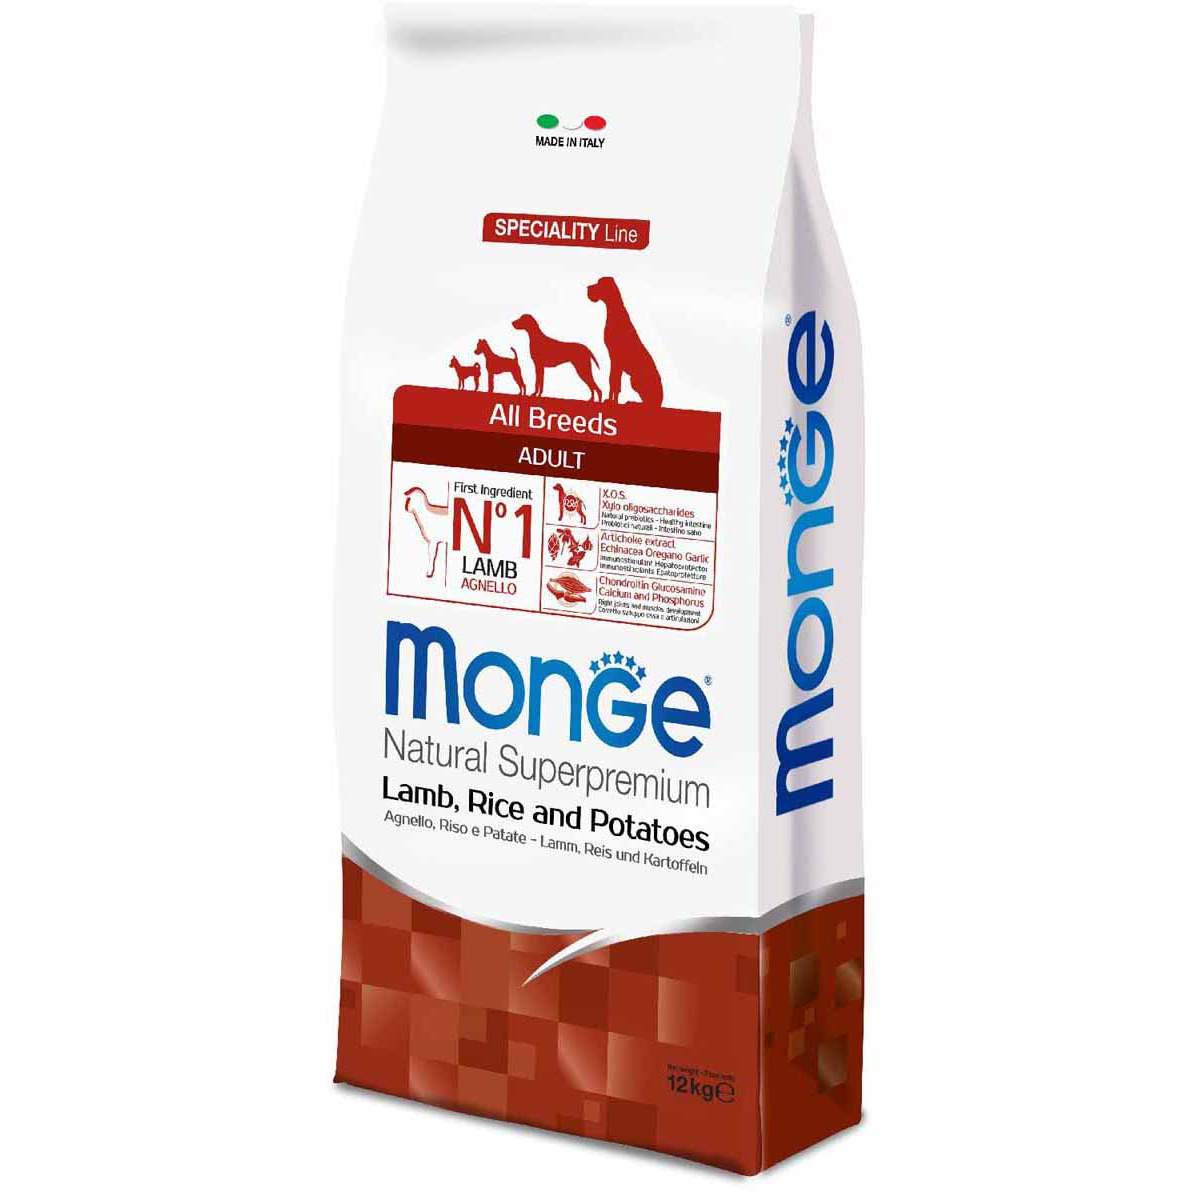 Сухой корм для собак Monge Speciality, все породы, ягненок, рис, картофель, 12кг - отзывы покупателей на маркетплейсе sbermegamarket.ru | Артикул товара:100001276844